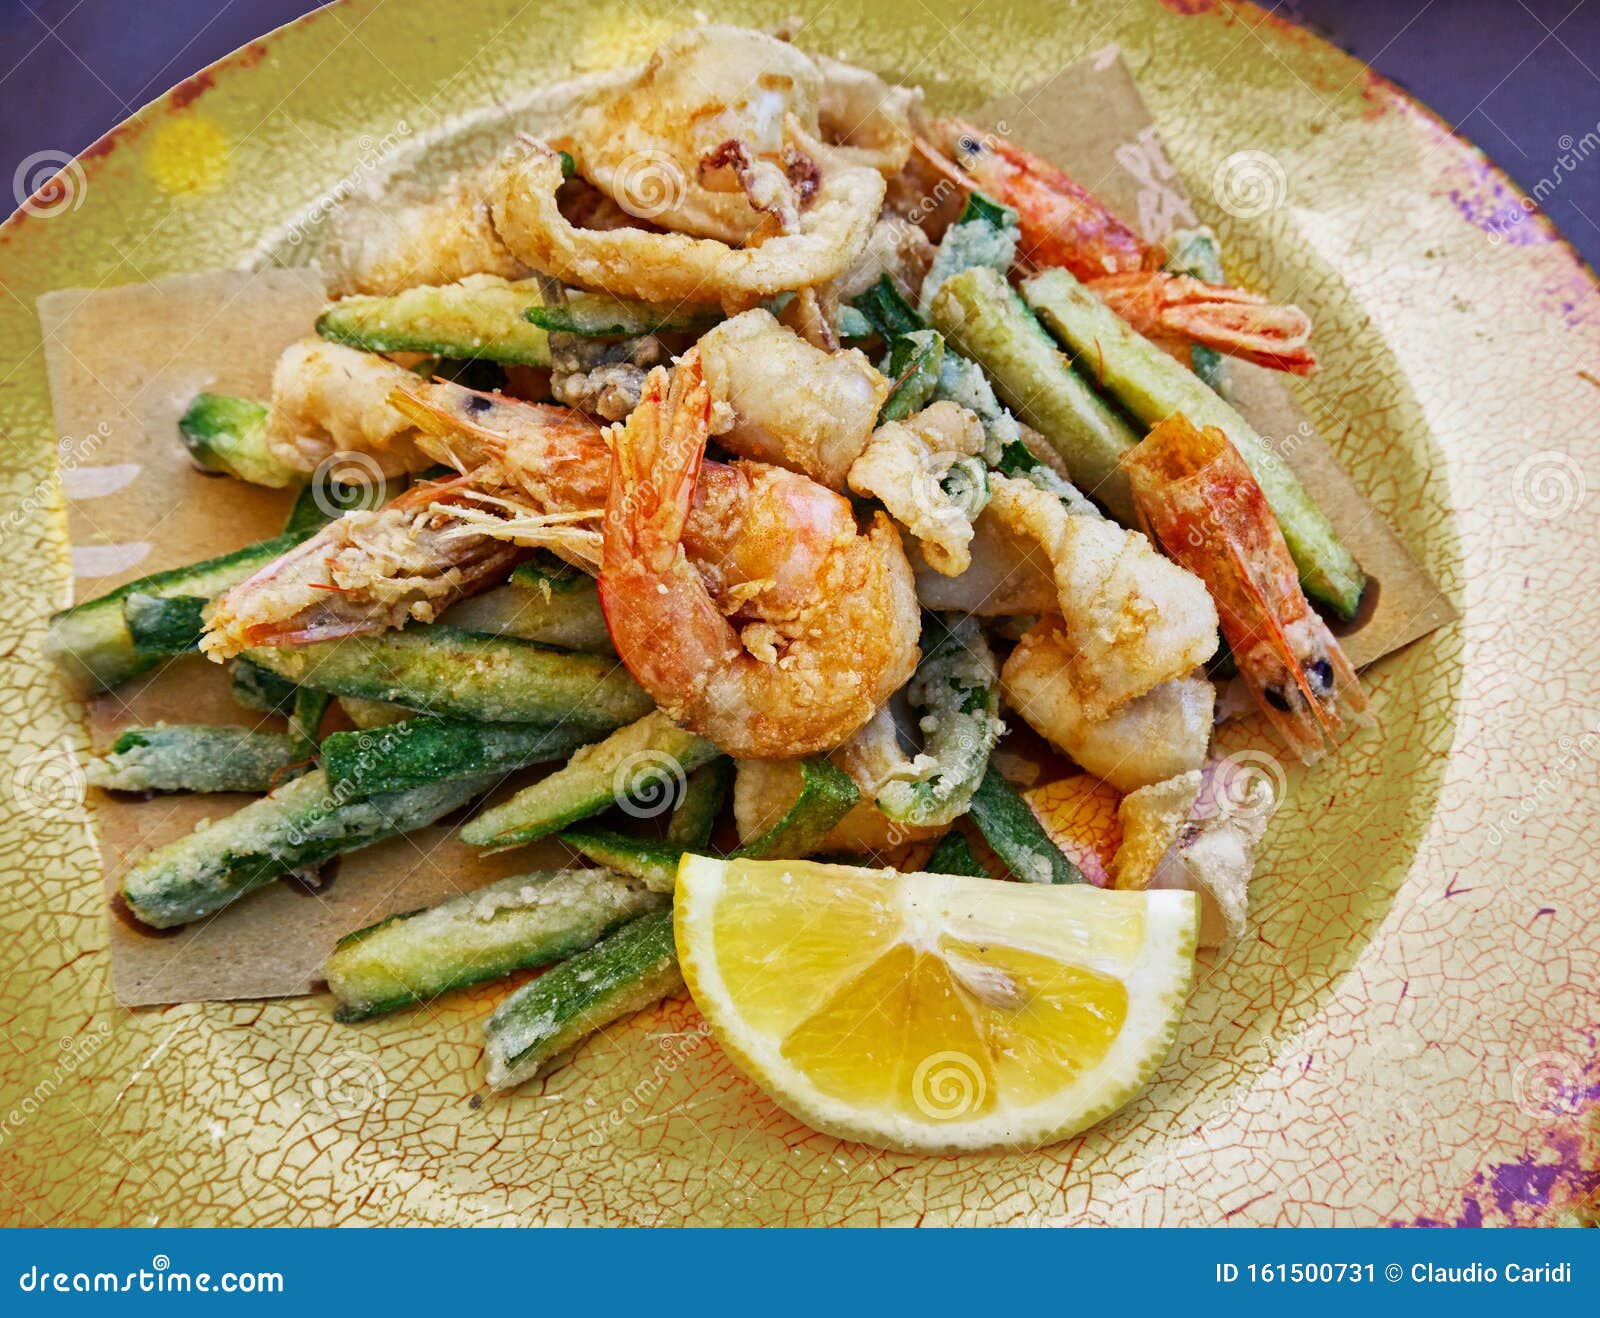 italian seafood: fritto misto di pesce con verdure